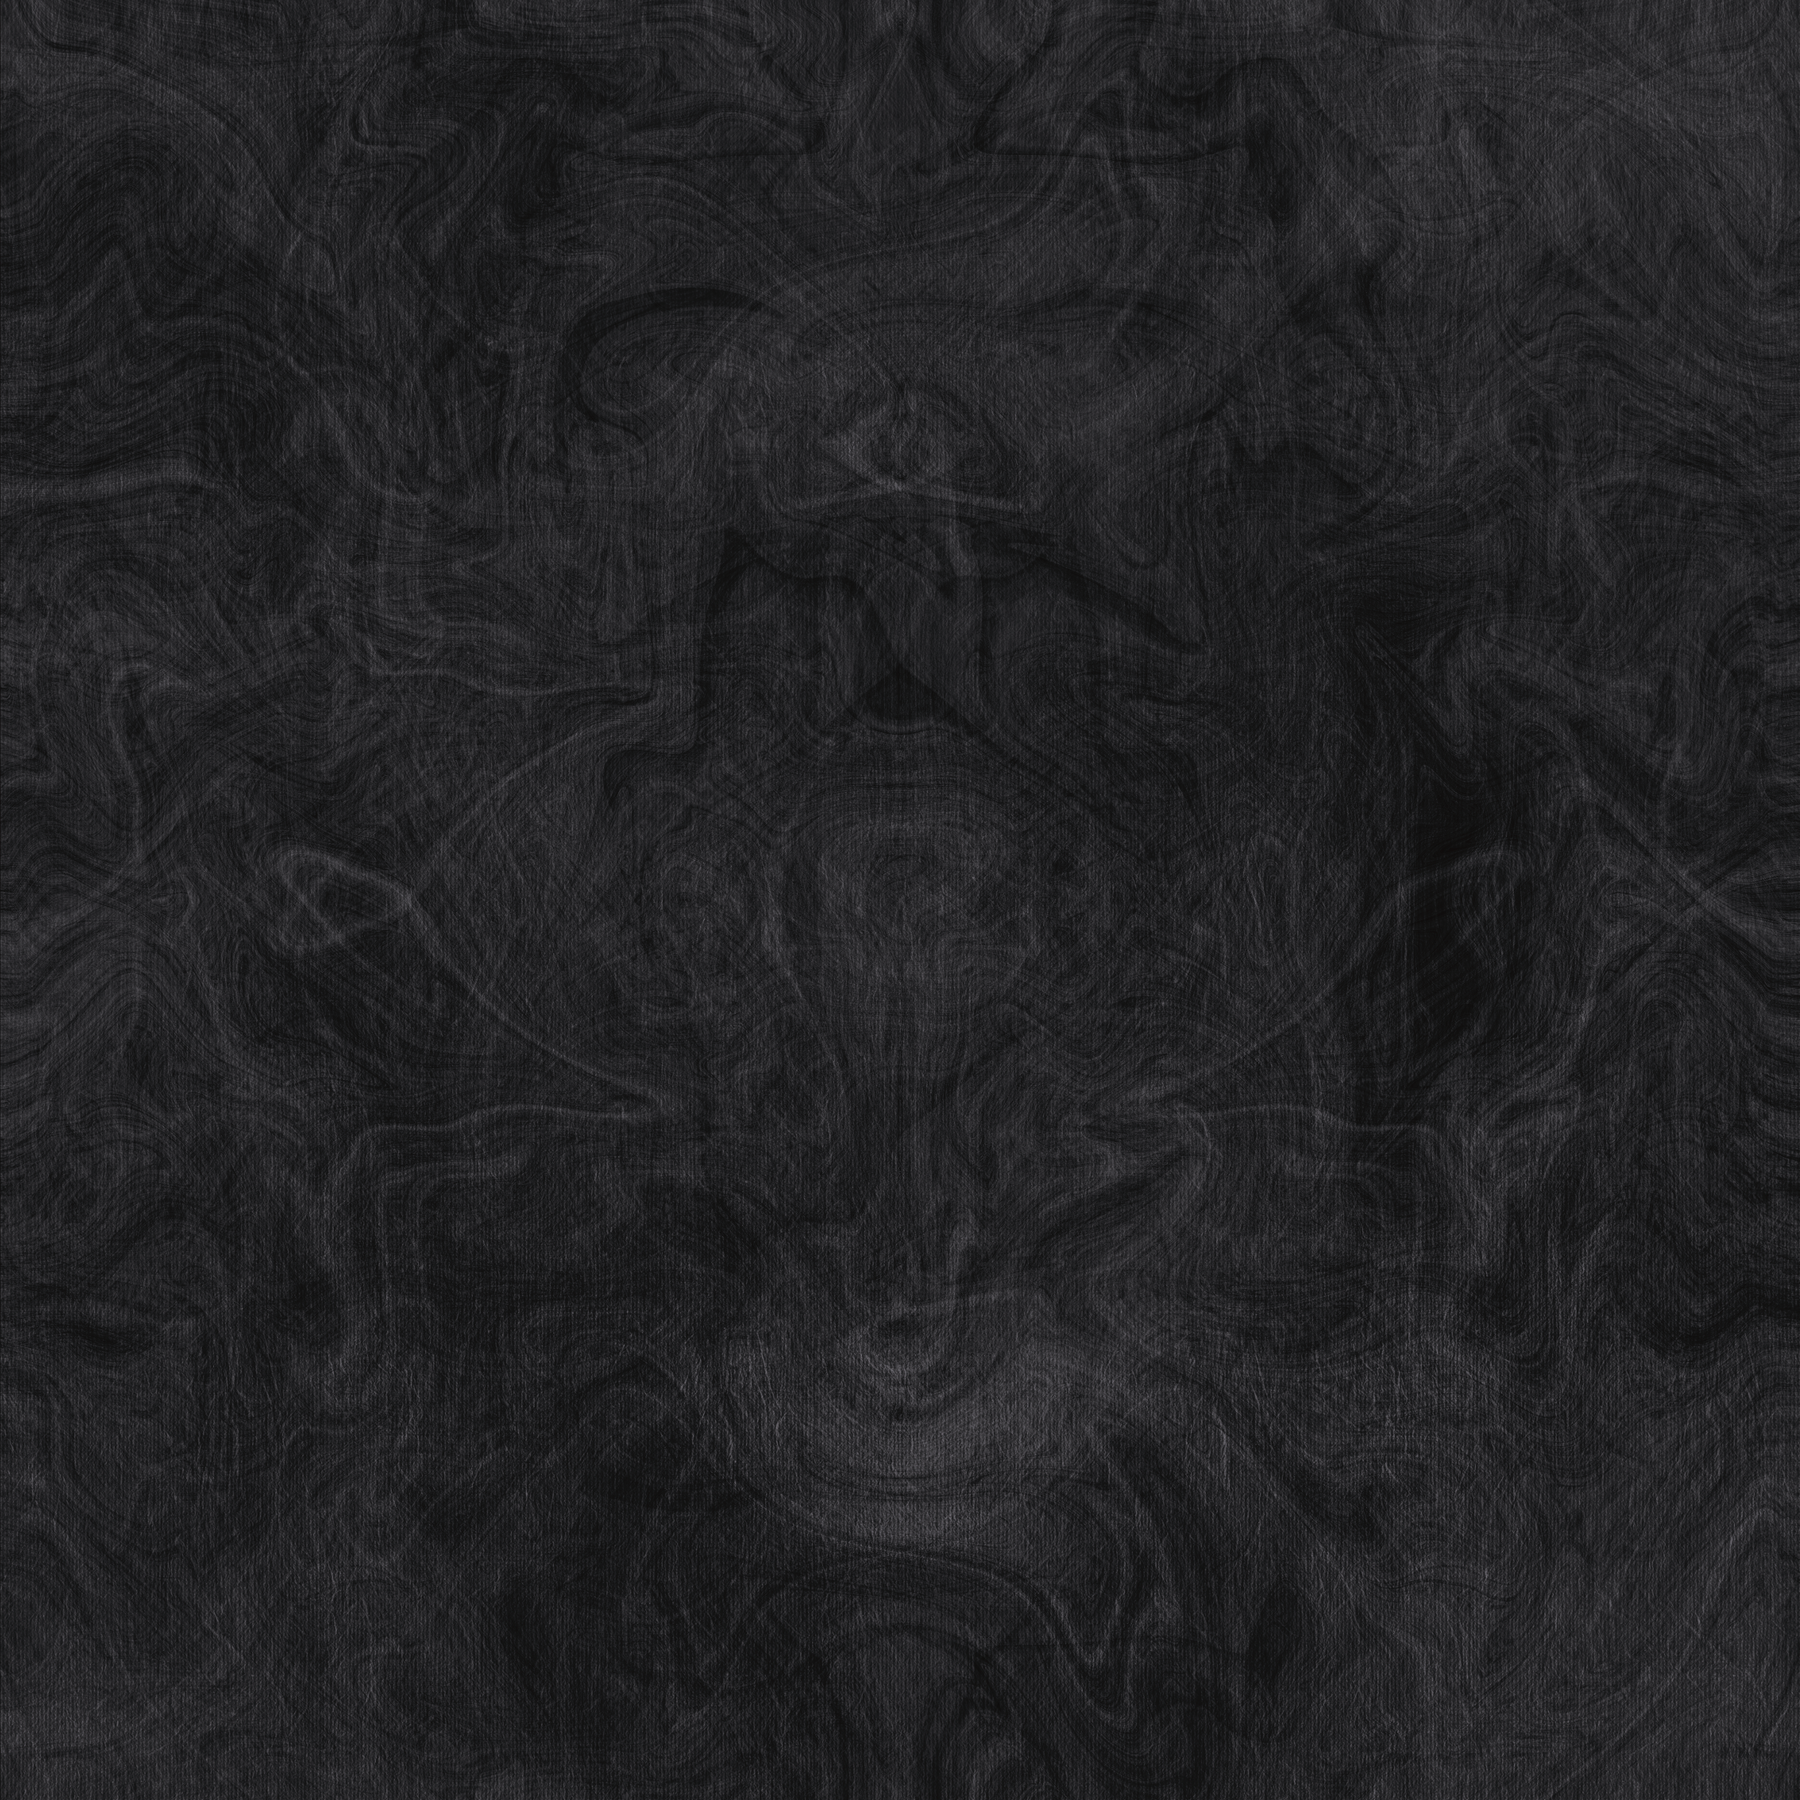 Black Textured Background